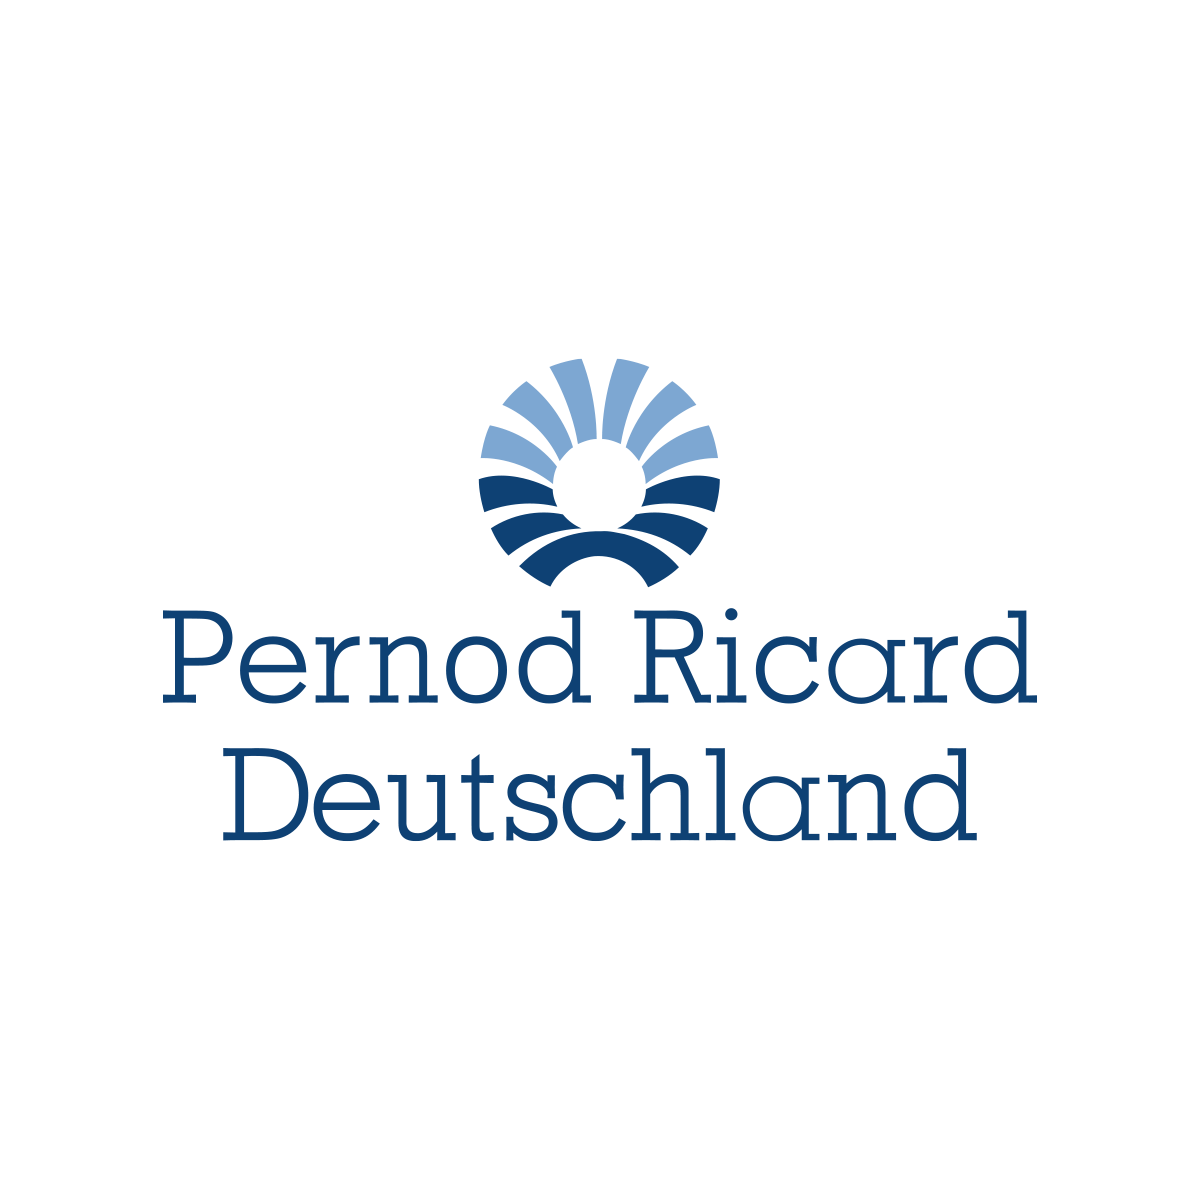 Pernod Ricard Deutschland GmbH